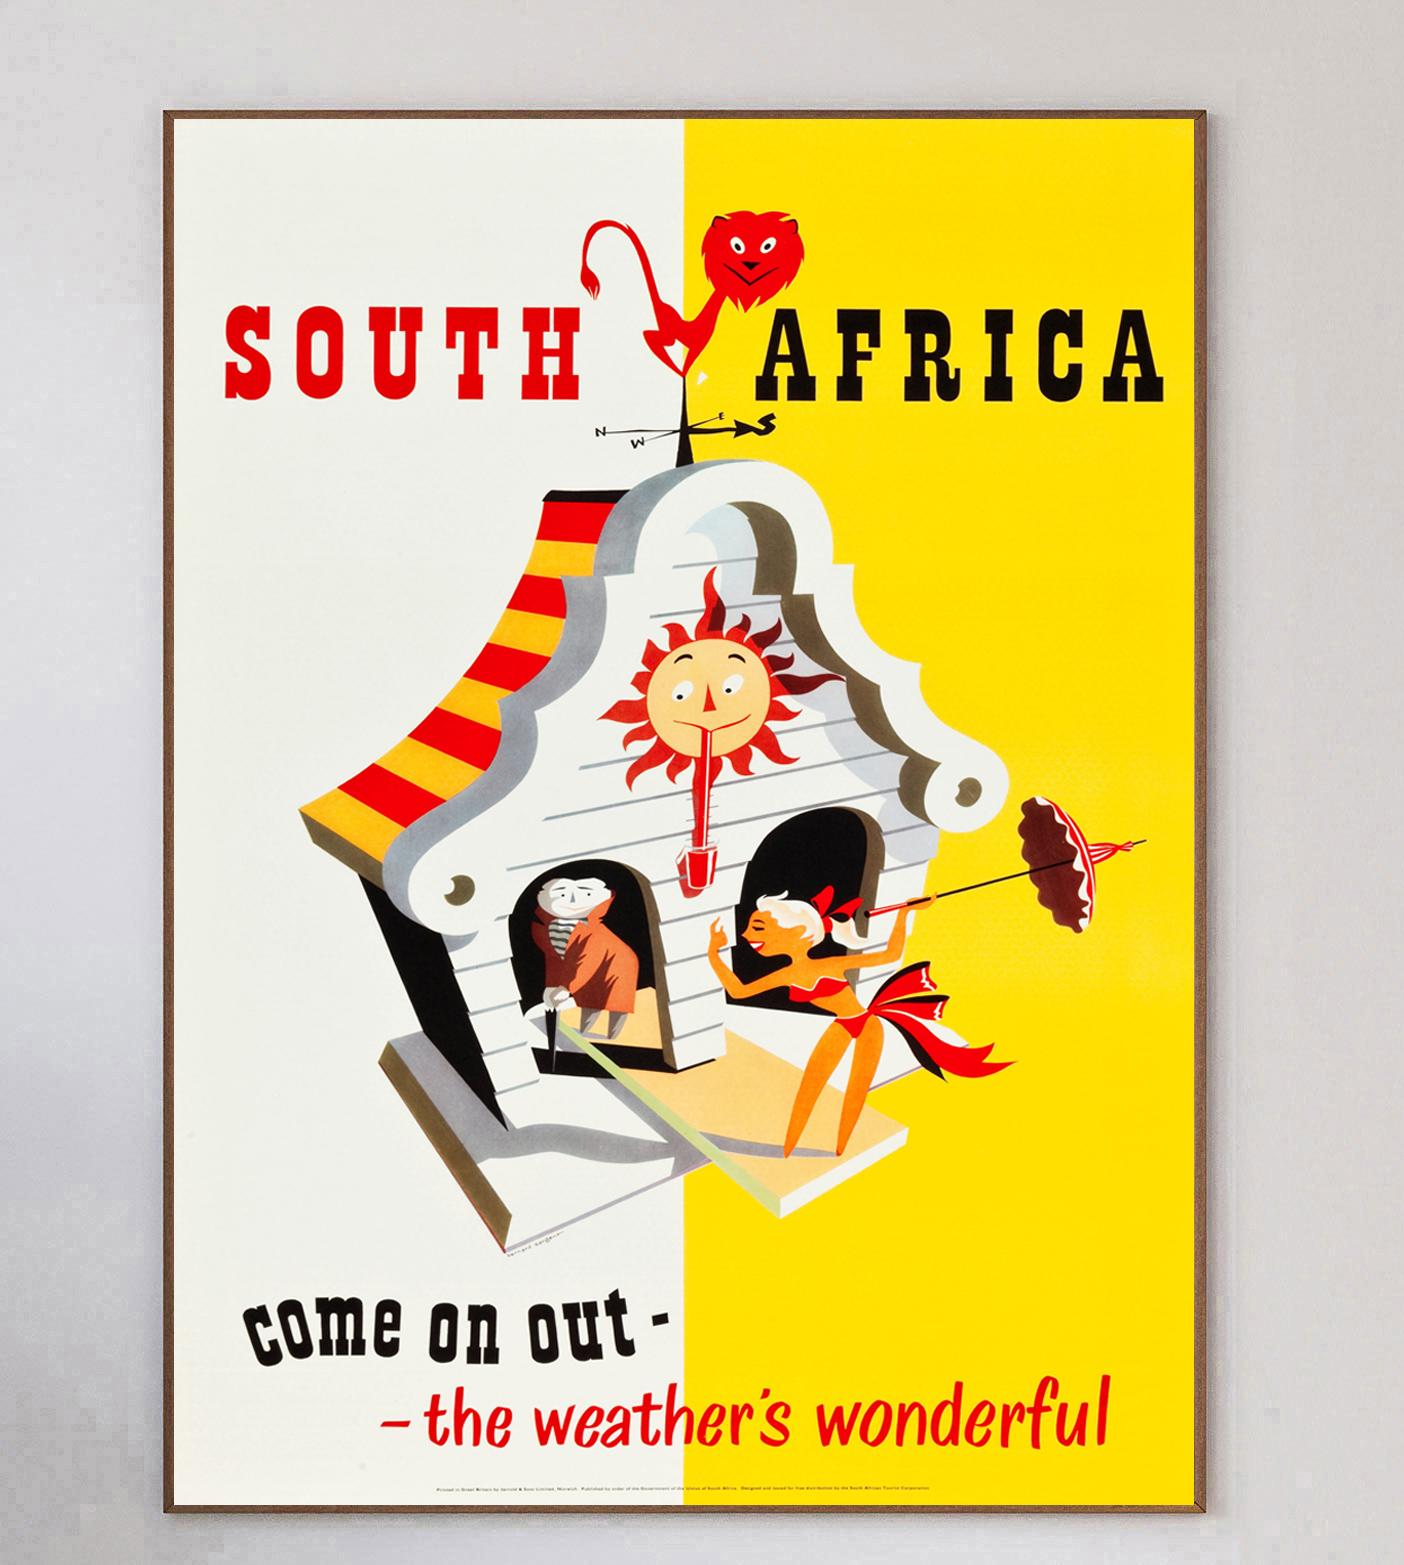 Wunderschönes Plakat, das 1955 vom südafrikanischen Fremdenverkehrsamt produziert wurde, um Touristen und Besucher aufzufordern, nach Südafrika zu kommen, denn 